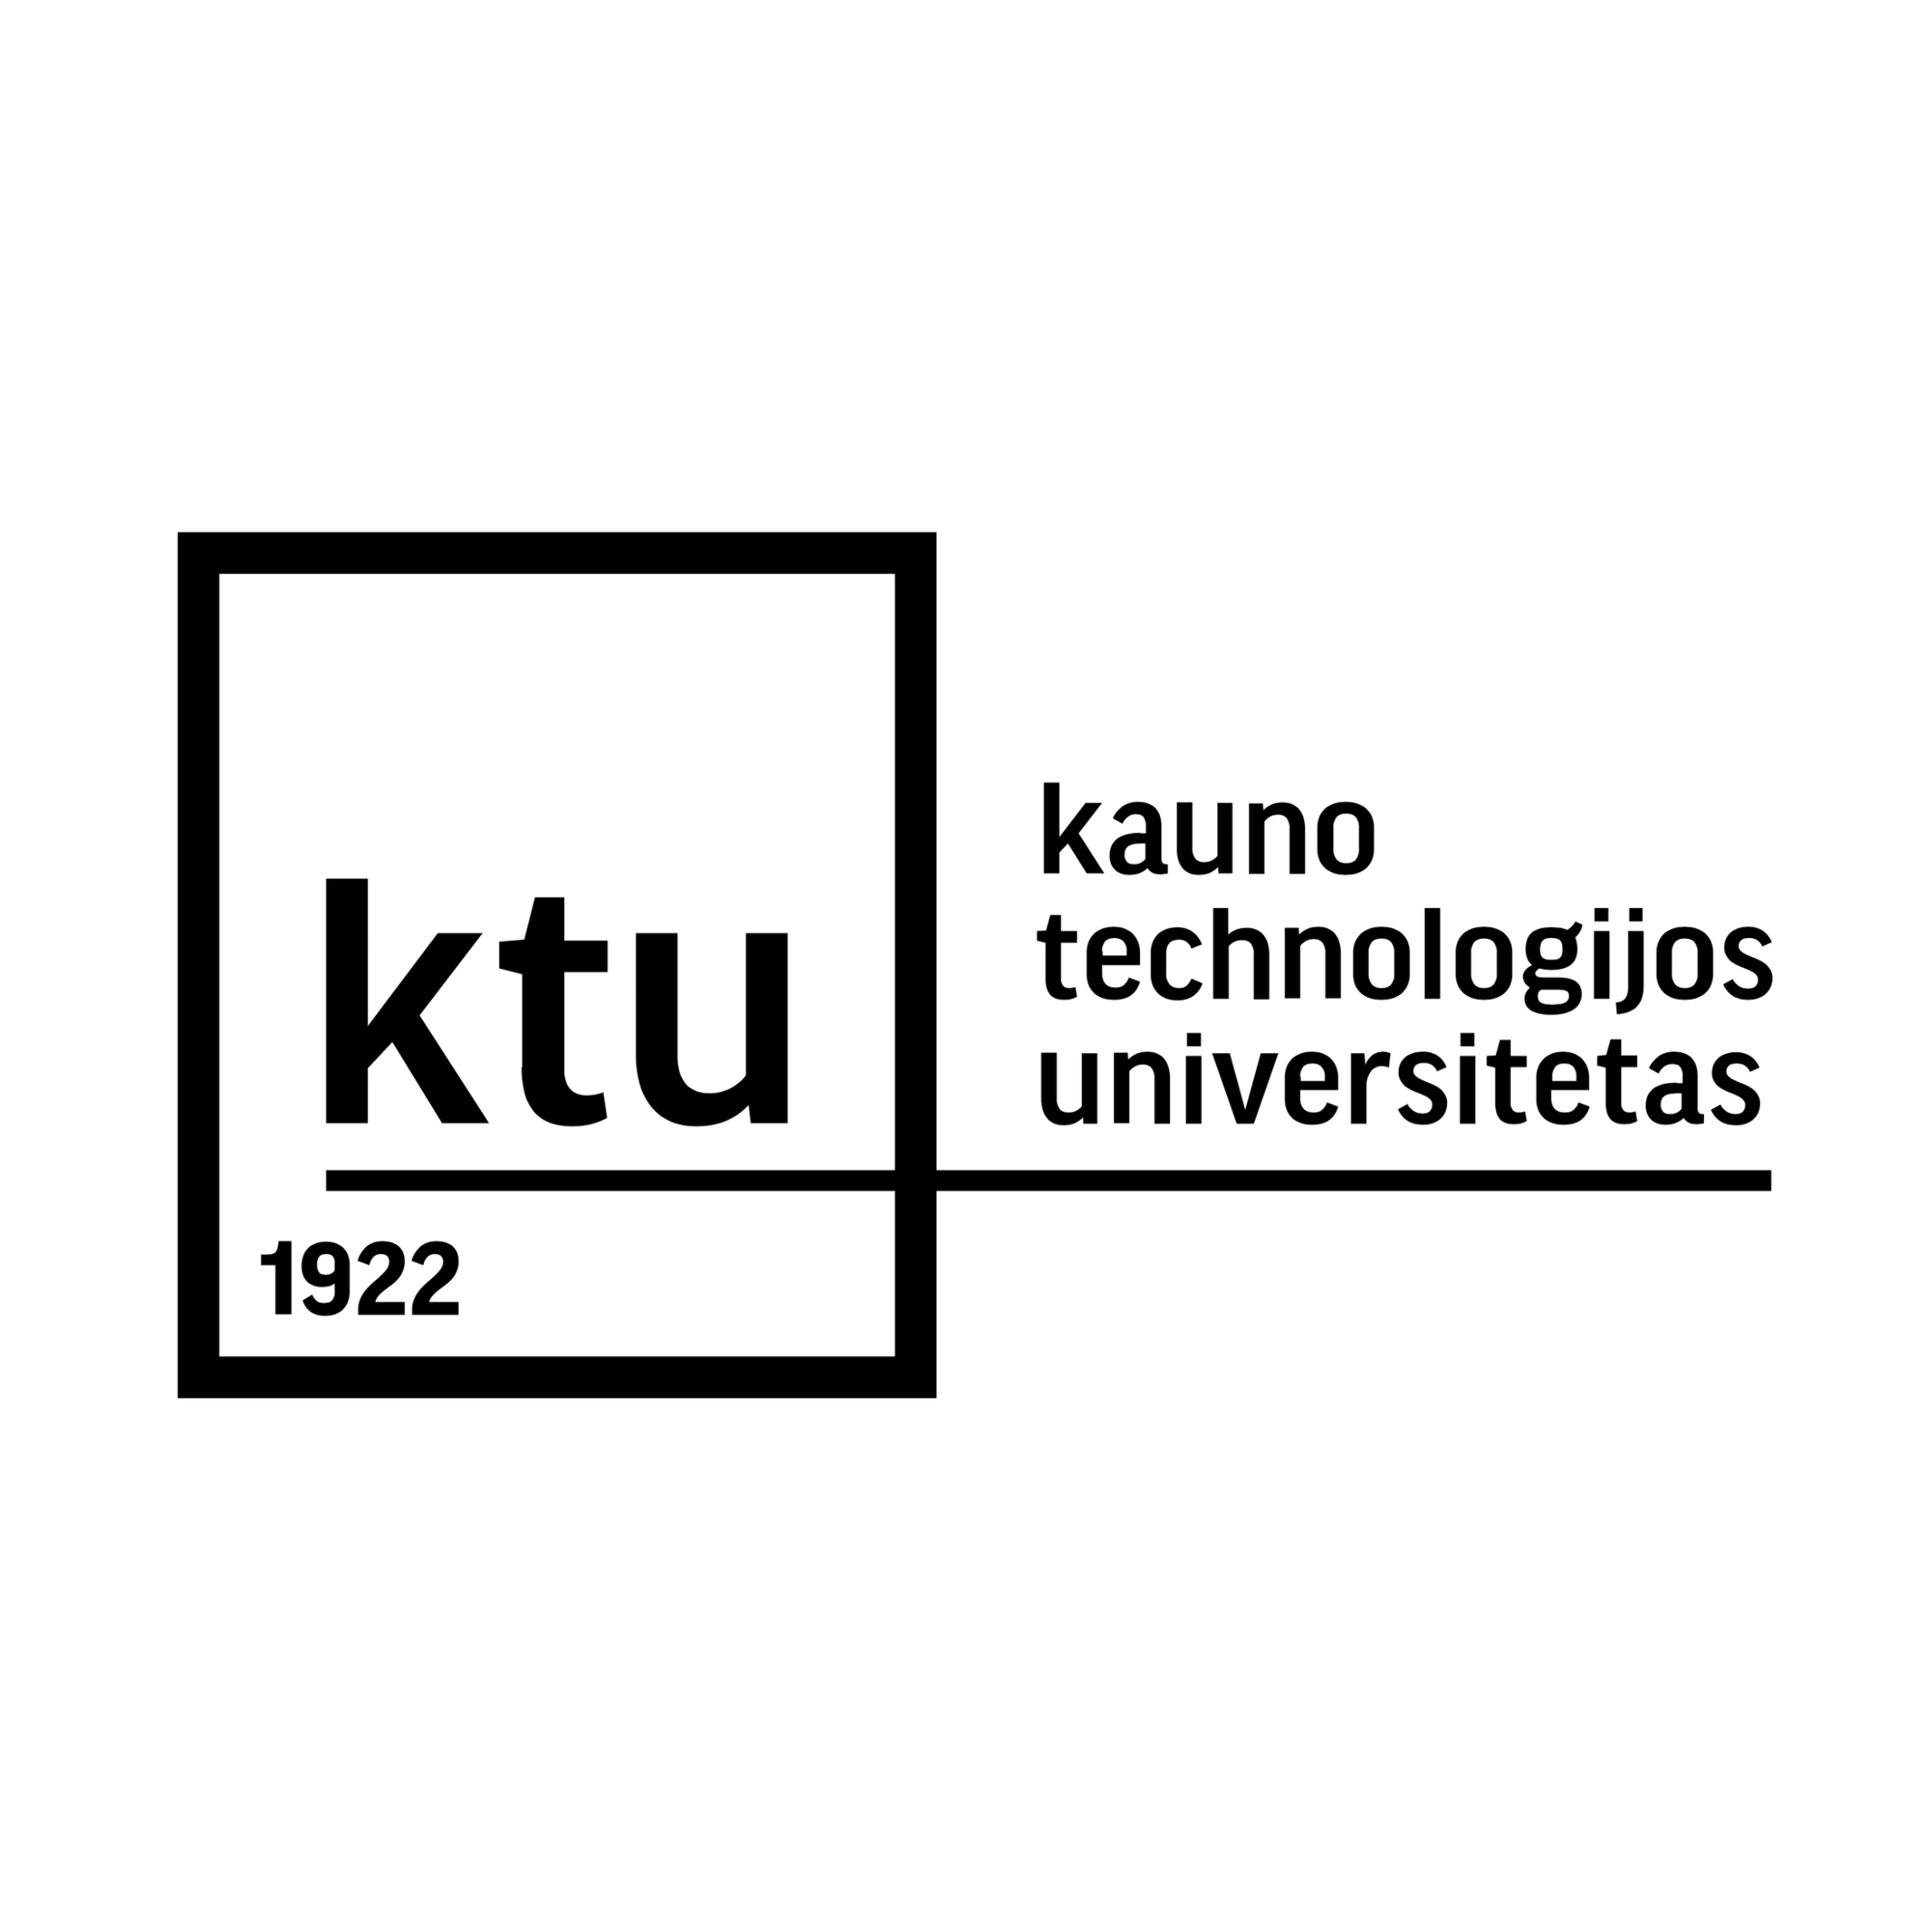 (c) Ktu.edu